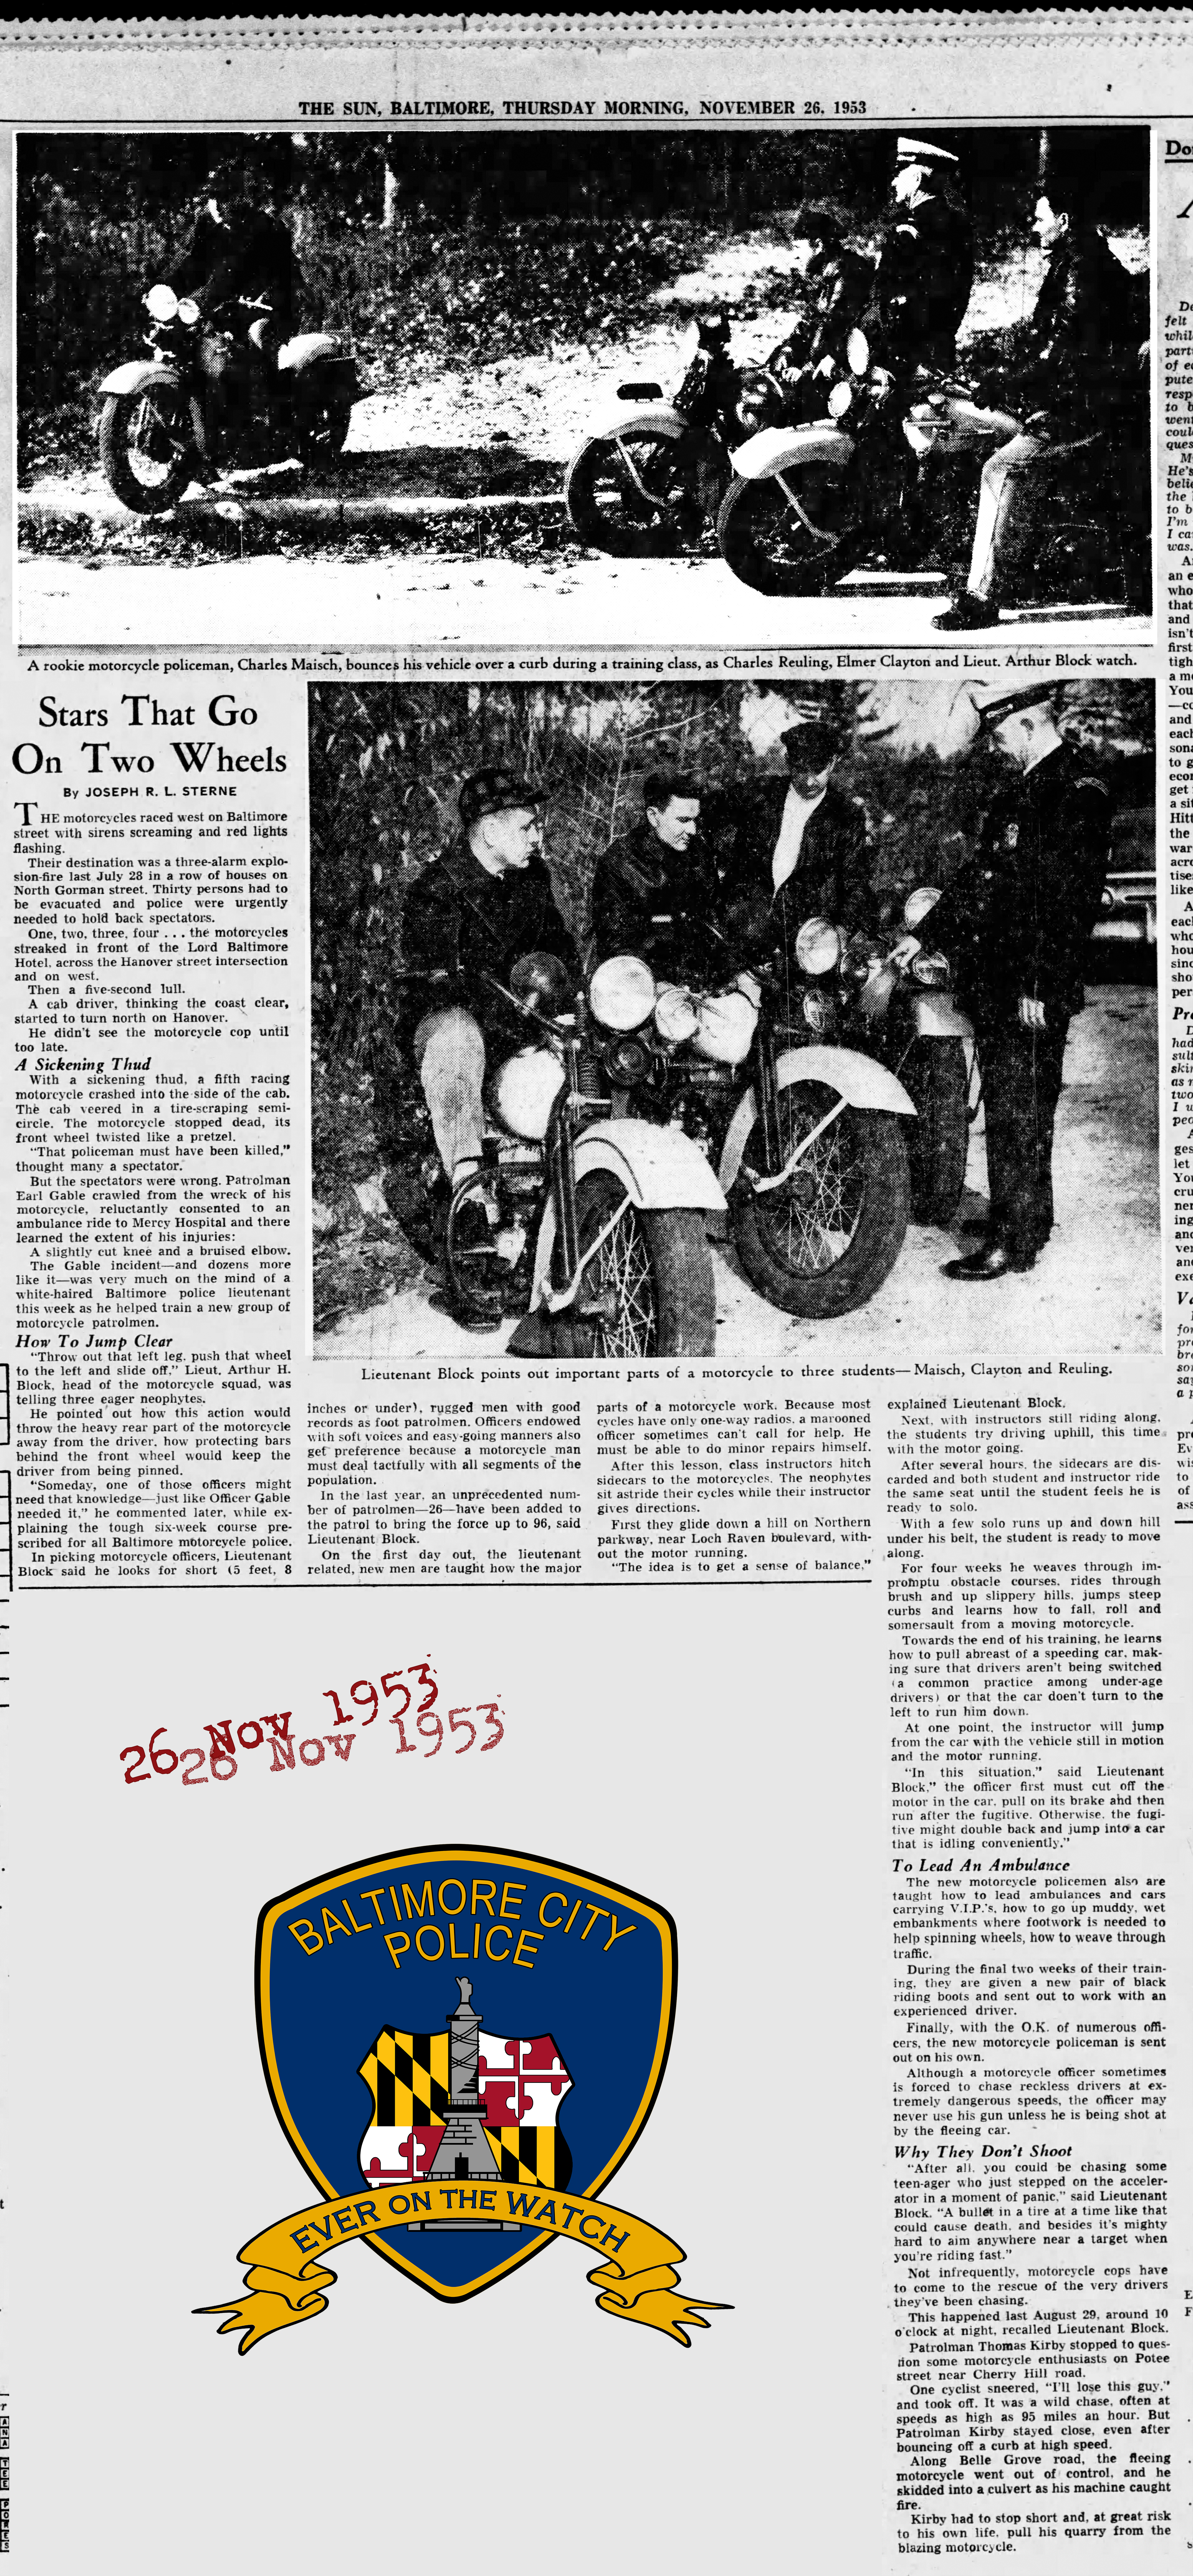 The Baltimore Sun Thu Nov 26 1953 